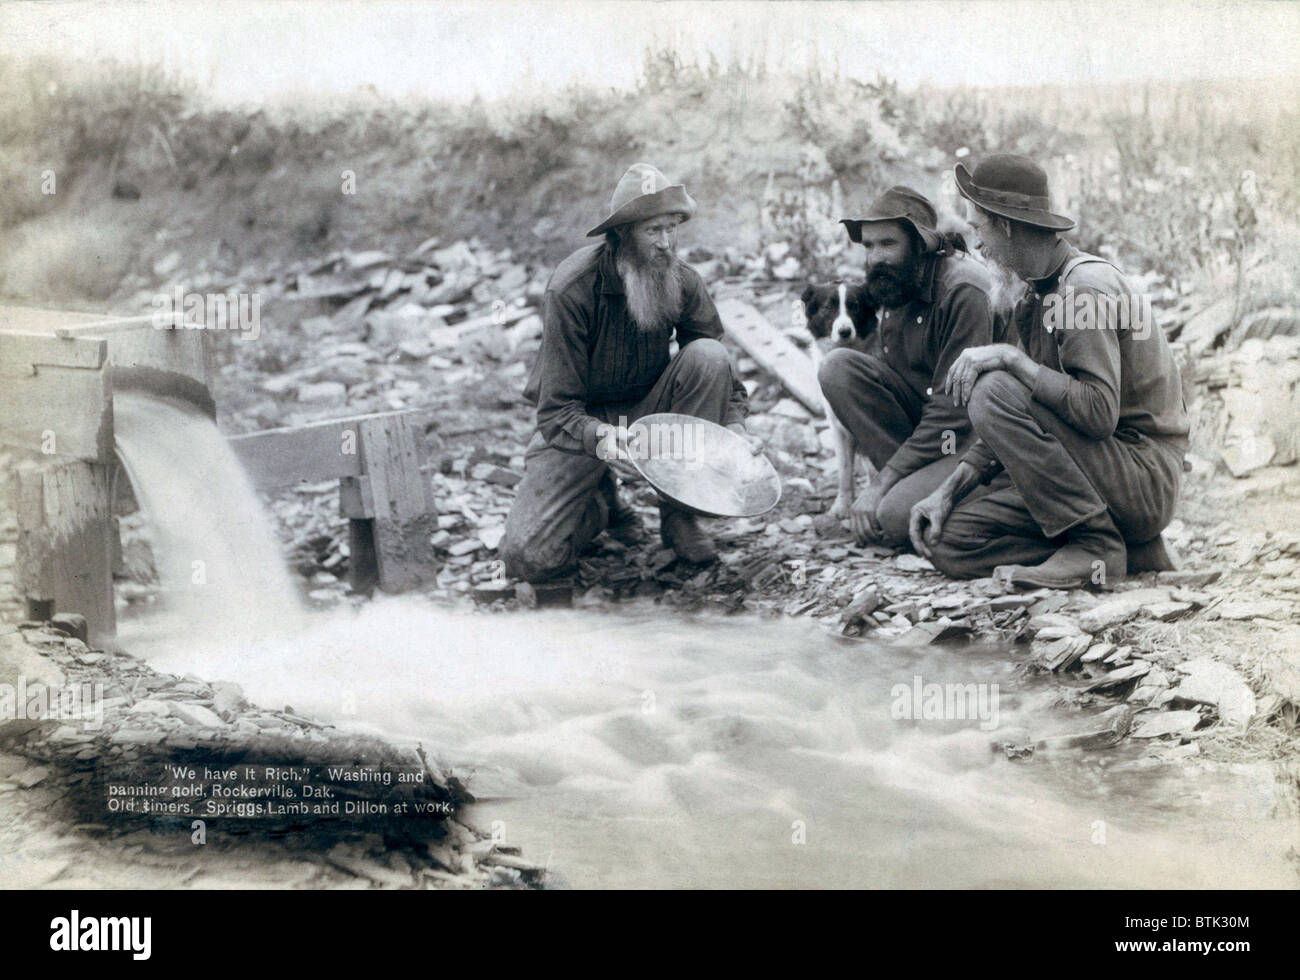 Drei Männer, mit Hund, Goldwaschen in einem Bach in den Black Hills von South Dakota im Jahre 1889. Old-Timer, Spriggs, Lamm und Dillon möglicherweise Die harten Überlebende aus dem Goldrausch von 1876. Stockfoto